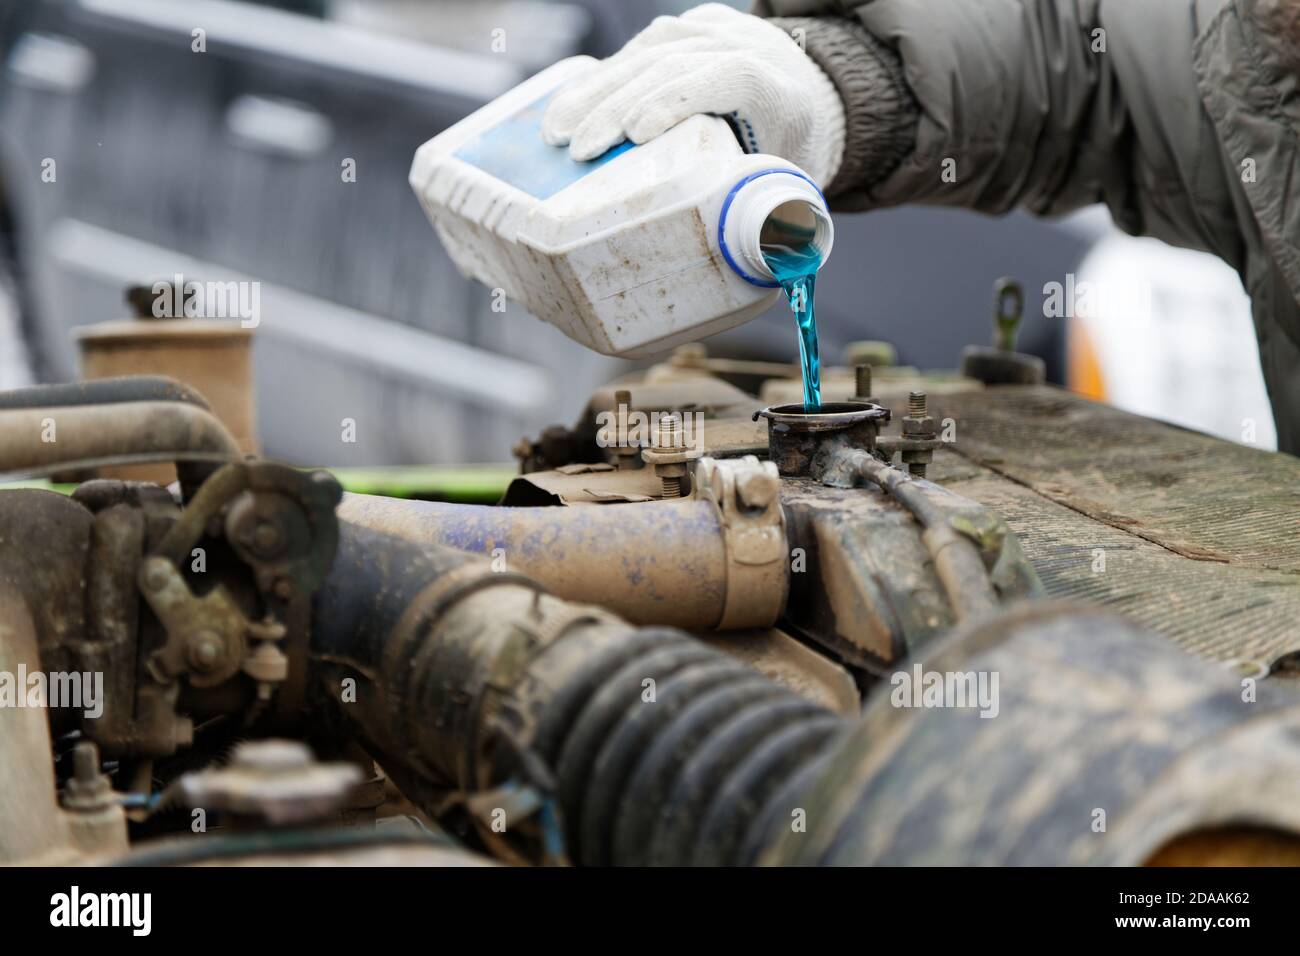 Ein Automechaniker gießt Frostschutzmittel in den Kühler eines alten Automotors. Geringer Fokus. Stockfoto